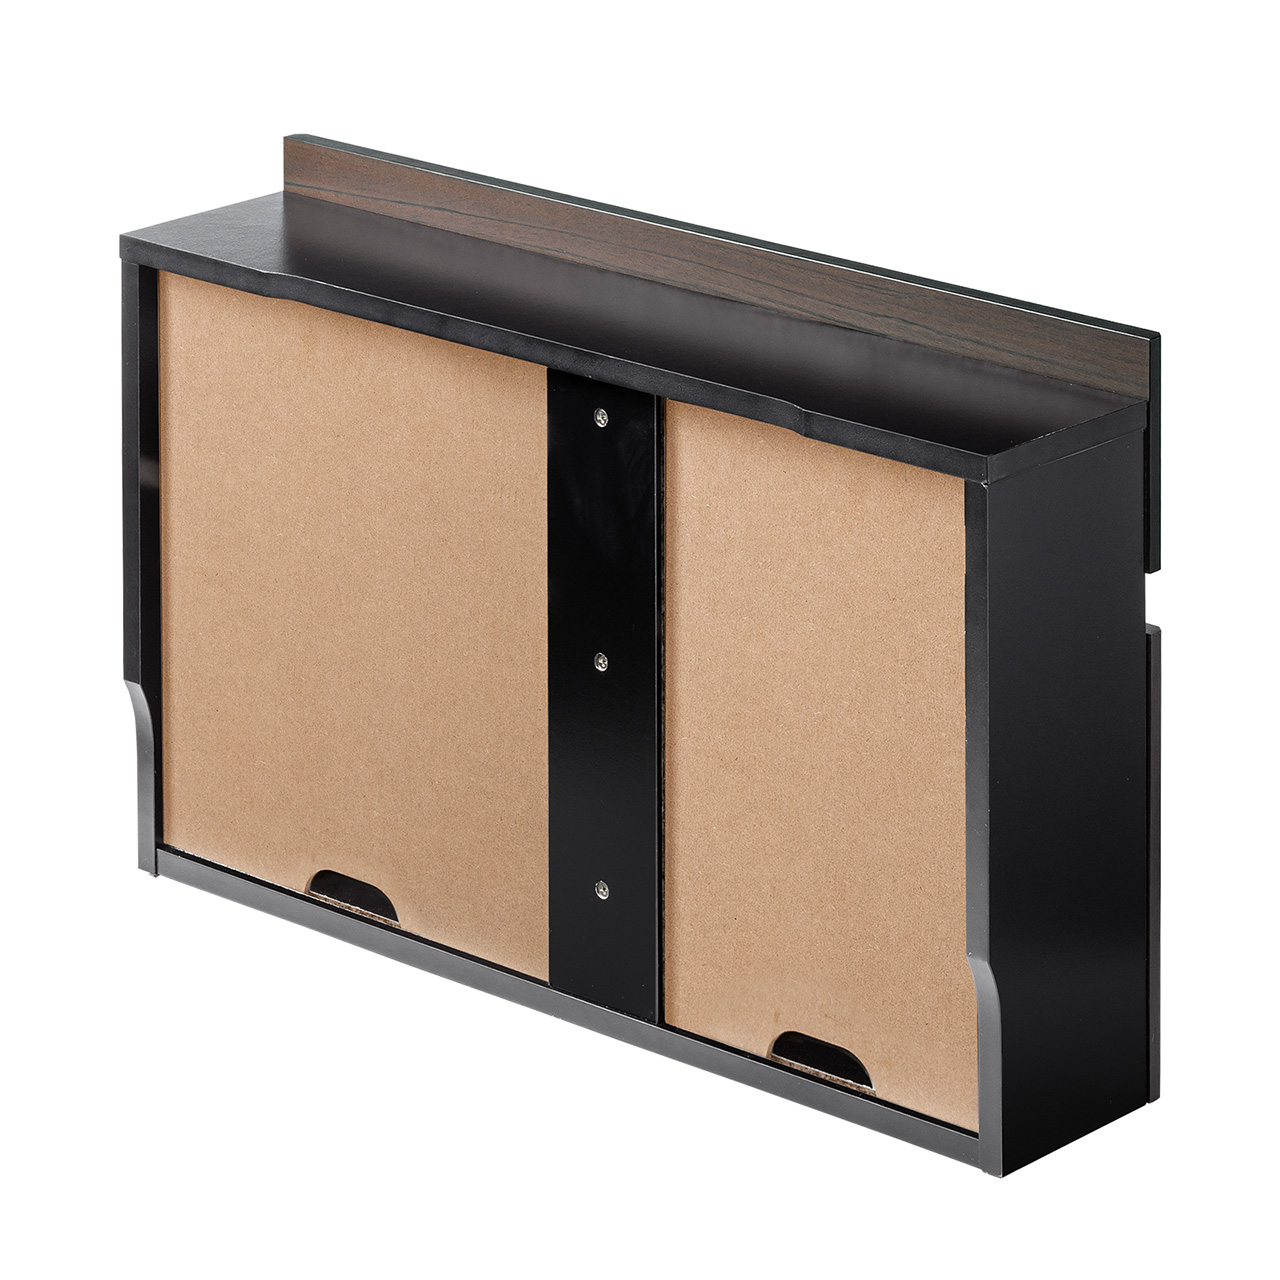 ルーター収納ボックス ケーブルボックス コンセント収納ボックス 配線隠し 配線整理 木製 スリム 壁面収納 幅65cm ダークブラウン 200-CB041DBRM